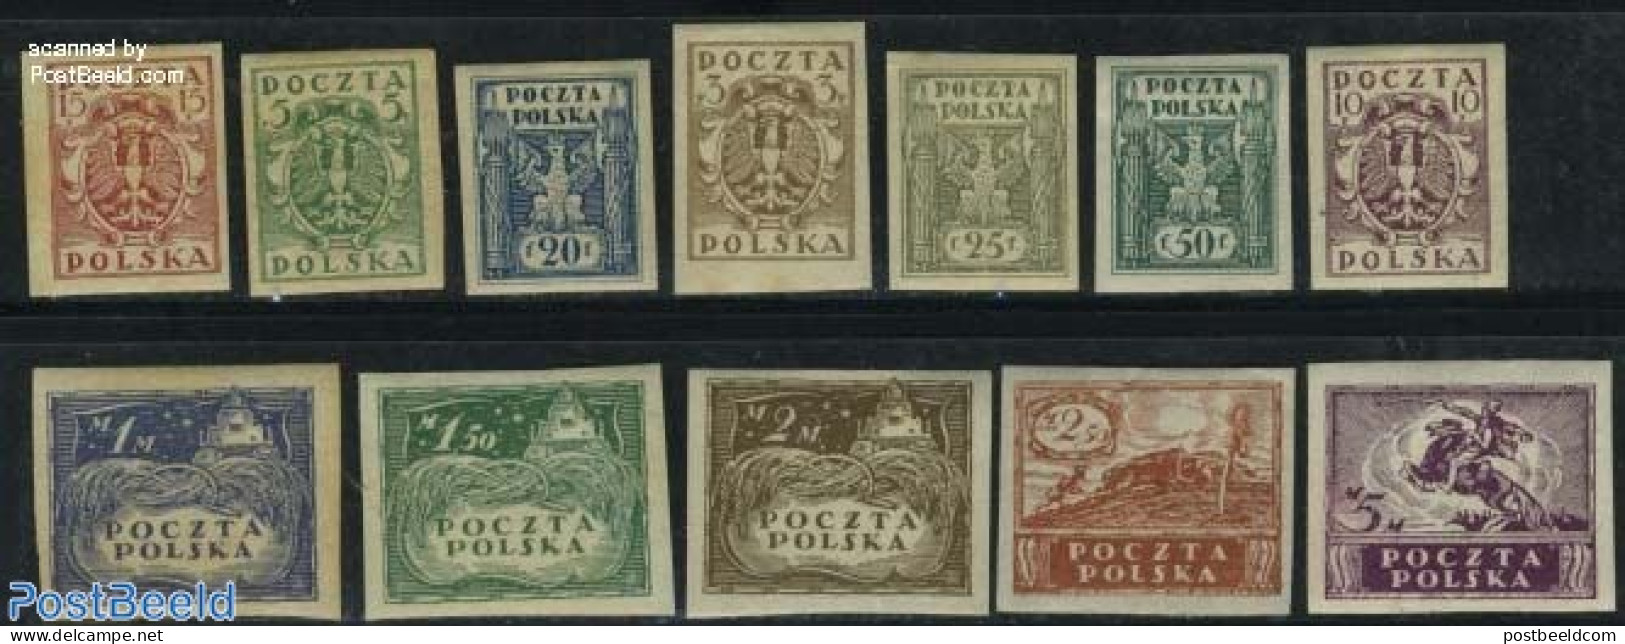 Poland 1919 Definitives 12v, Unused (hinged) - Unused Stamps